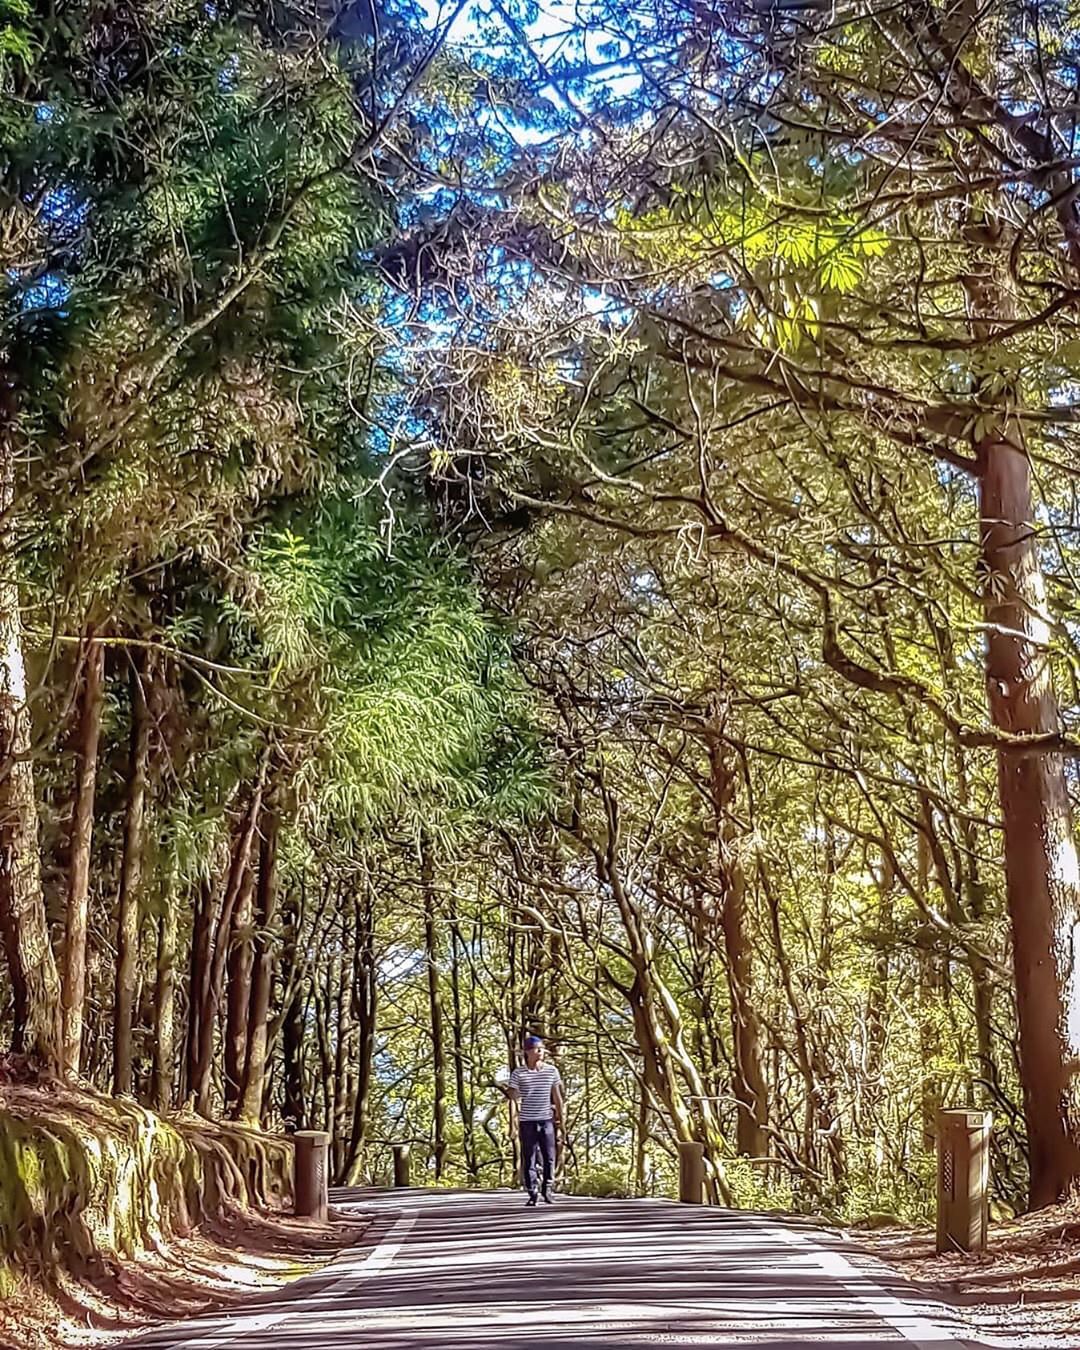 ⠀⠀⠀⠀⠀⠀⠀⠀⠀⠀⠀被樹林包圍的幸福-⠀⠀⠀⠀⠀⠀⠀⠀⠀⠀⠀⠀感謝 @chiuan29  分享的美照⛰️-⠀⠀⠀⠀⠀⠀⠀⠀⠀⠀⠀...